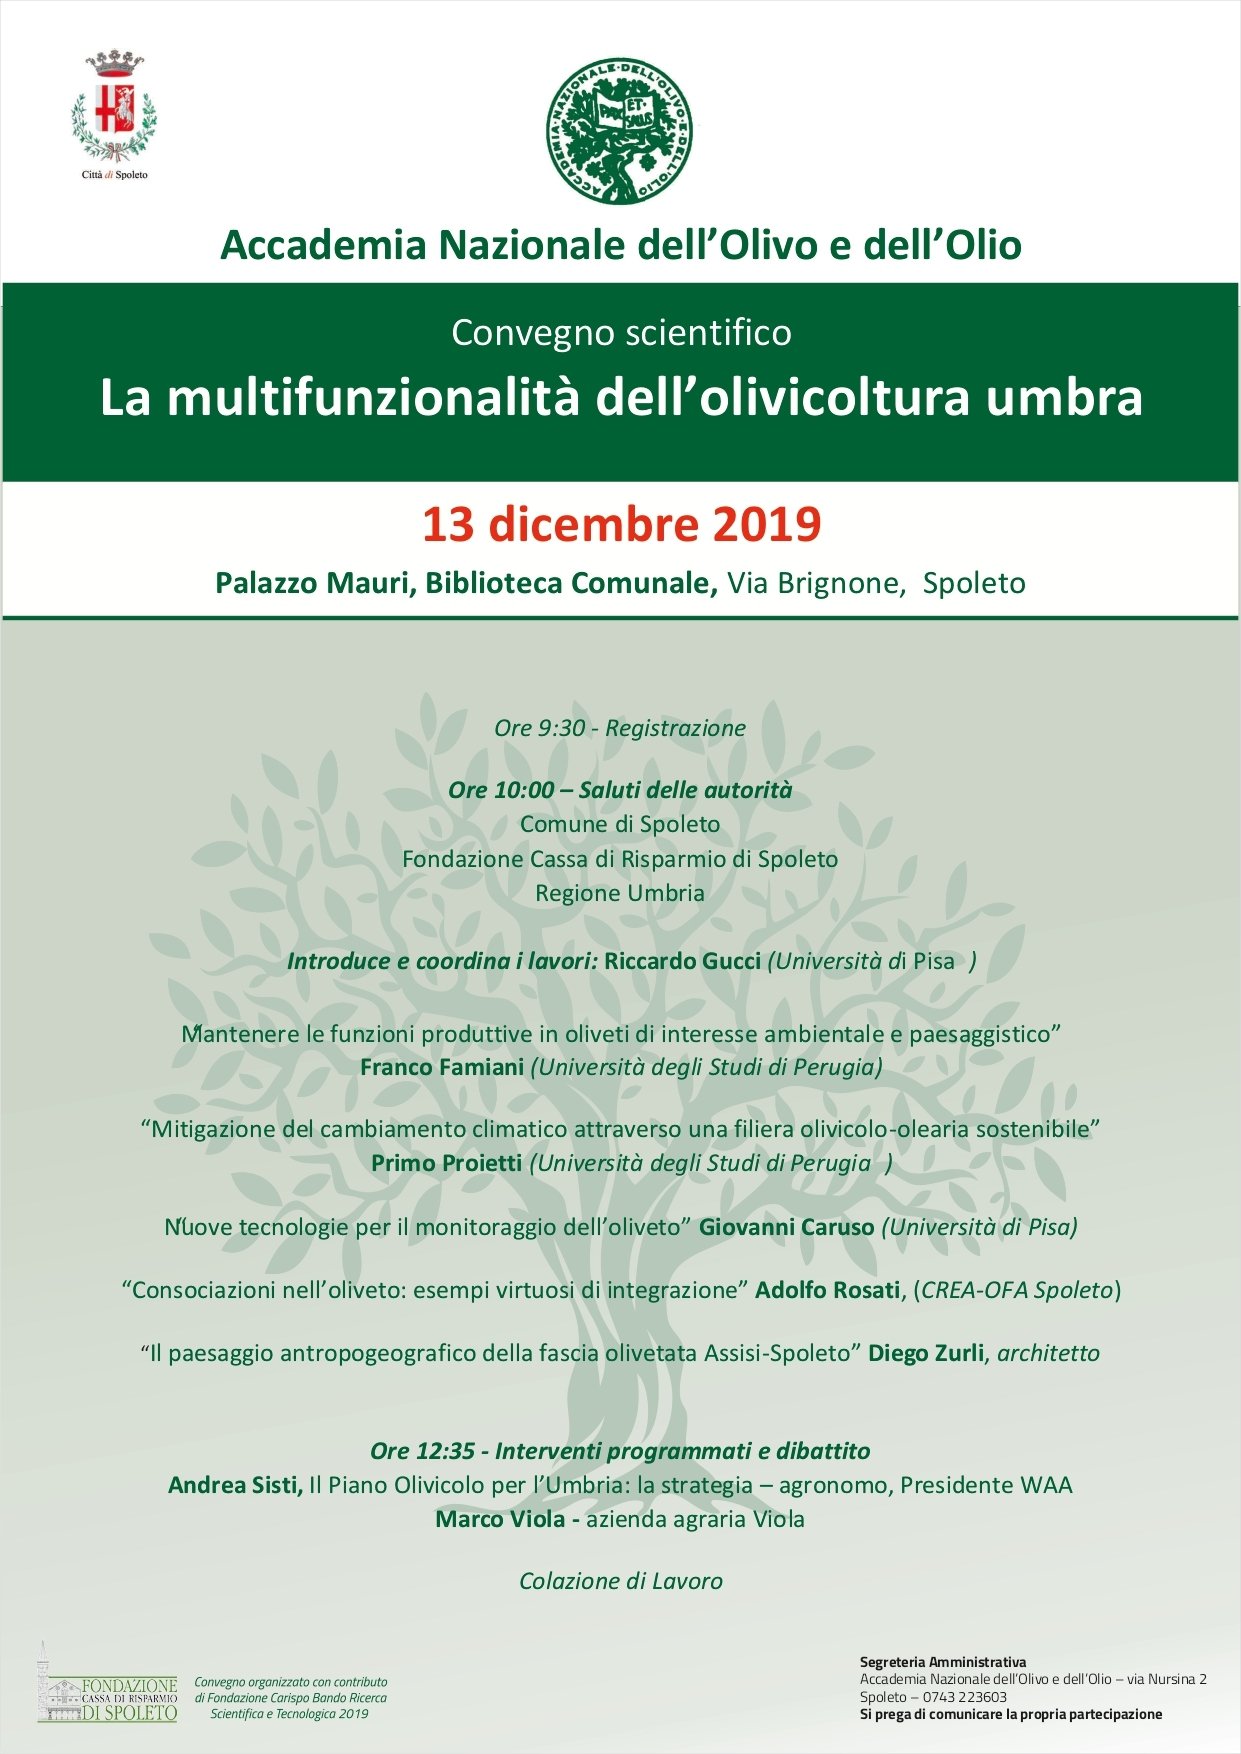 La multifunzionalità dell'olivicoltura umbra, il convegno dell’Accademia Nazionale dell’Olivo e Olio